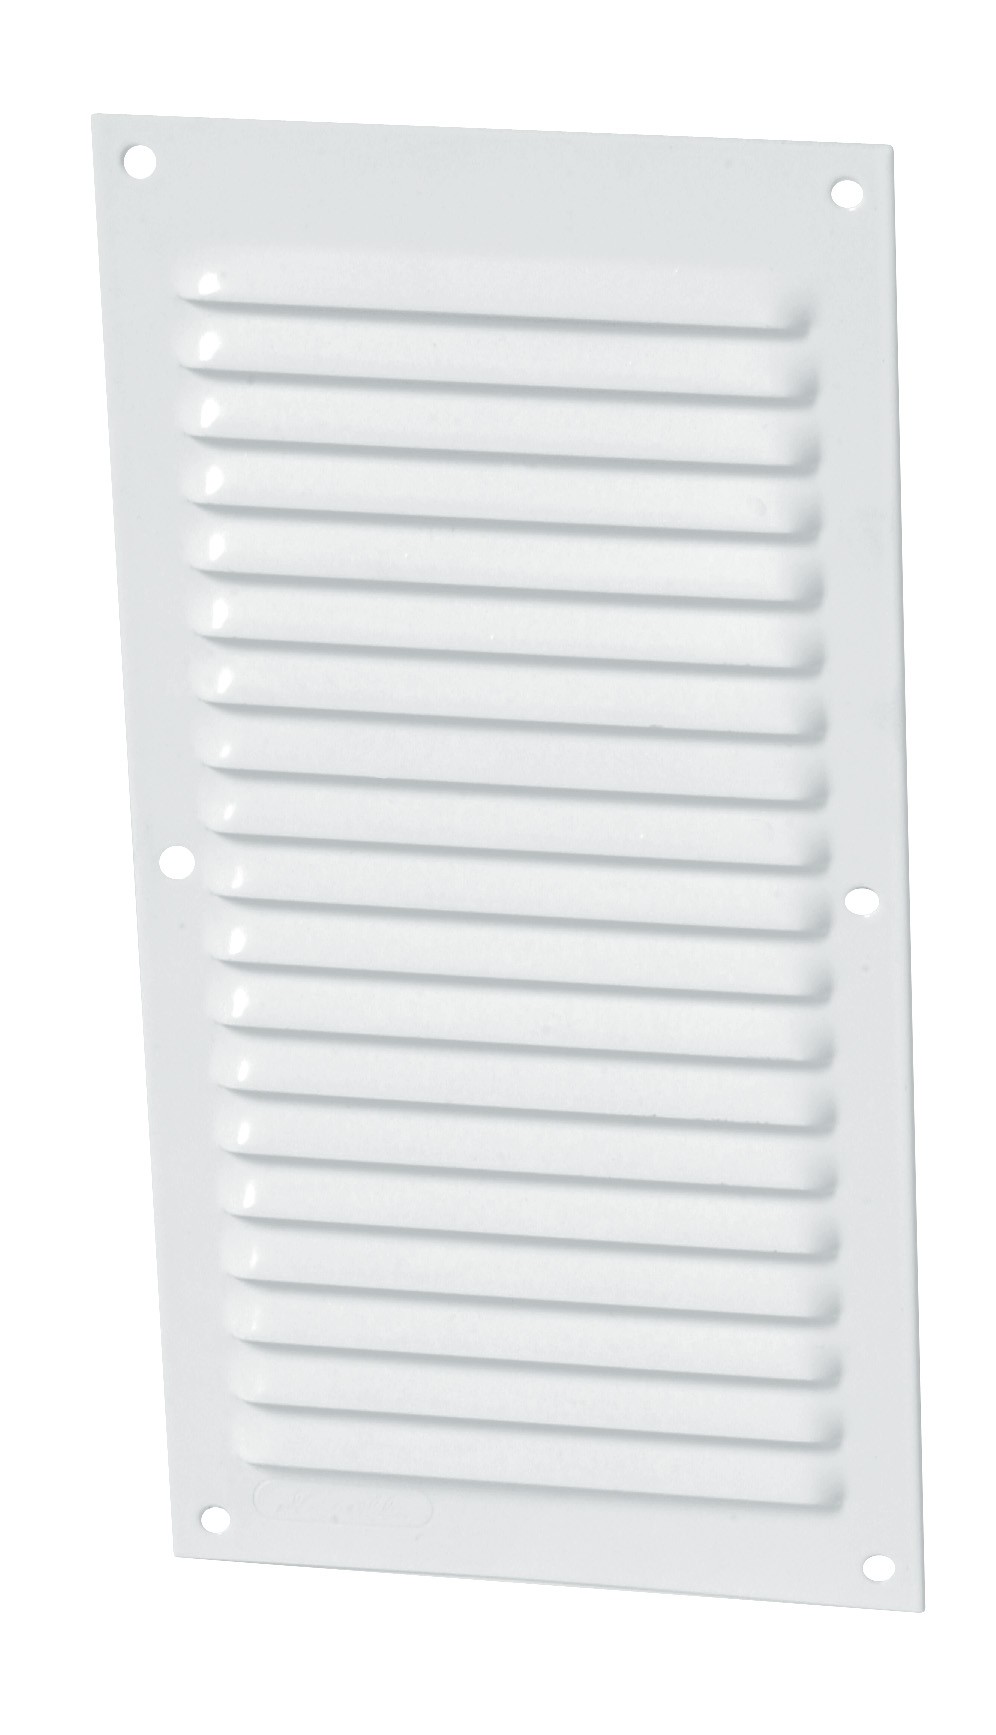 Alu laque blanc avec moustiquaire Rectangulaire verticale 20x10